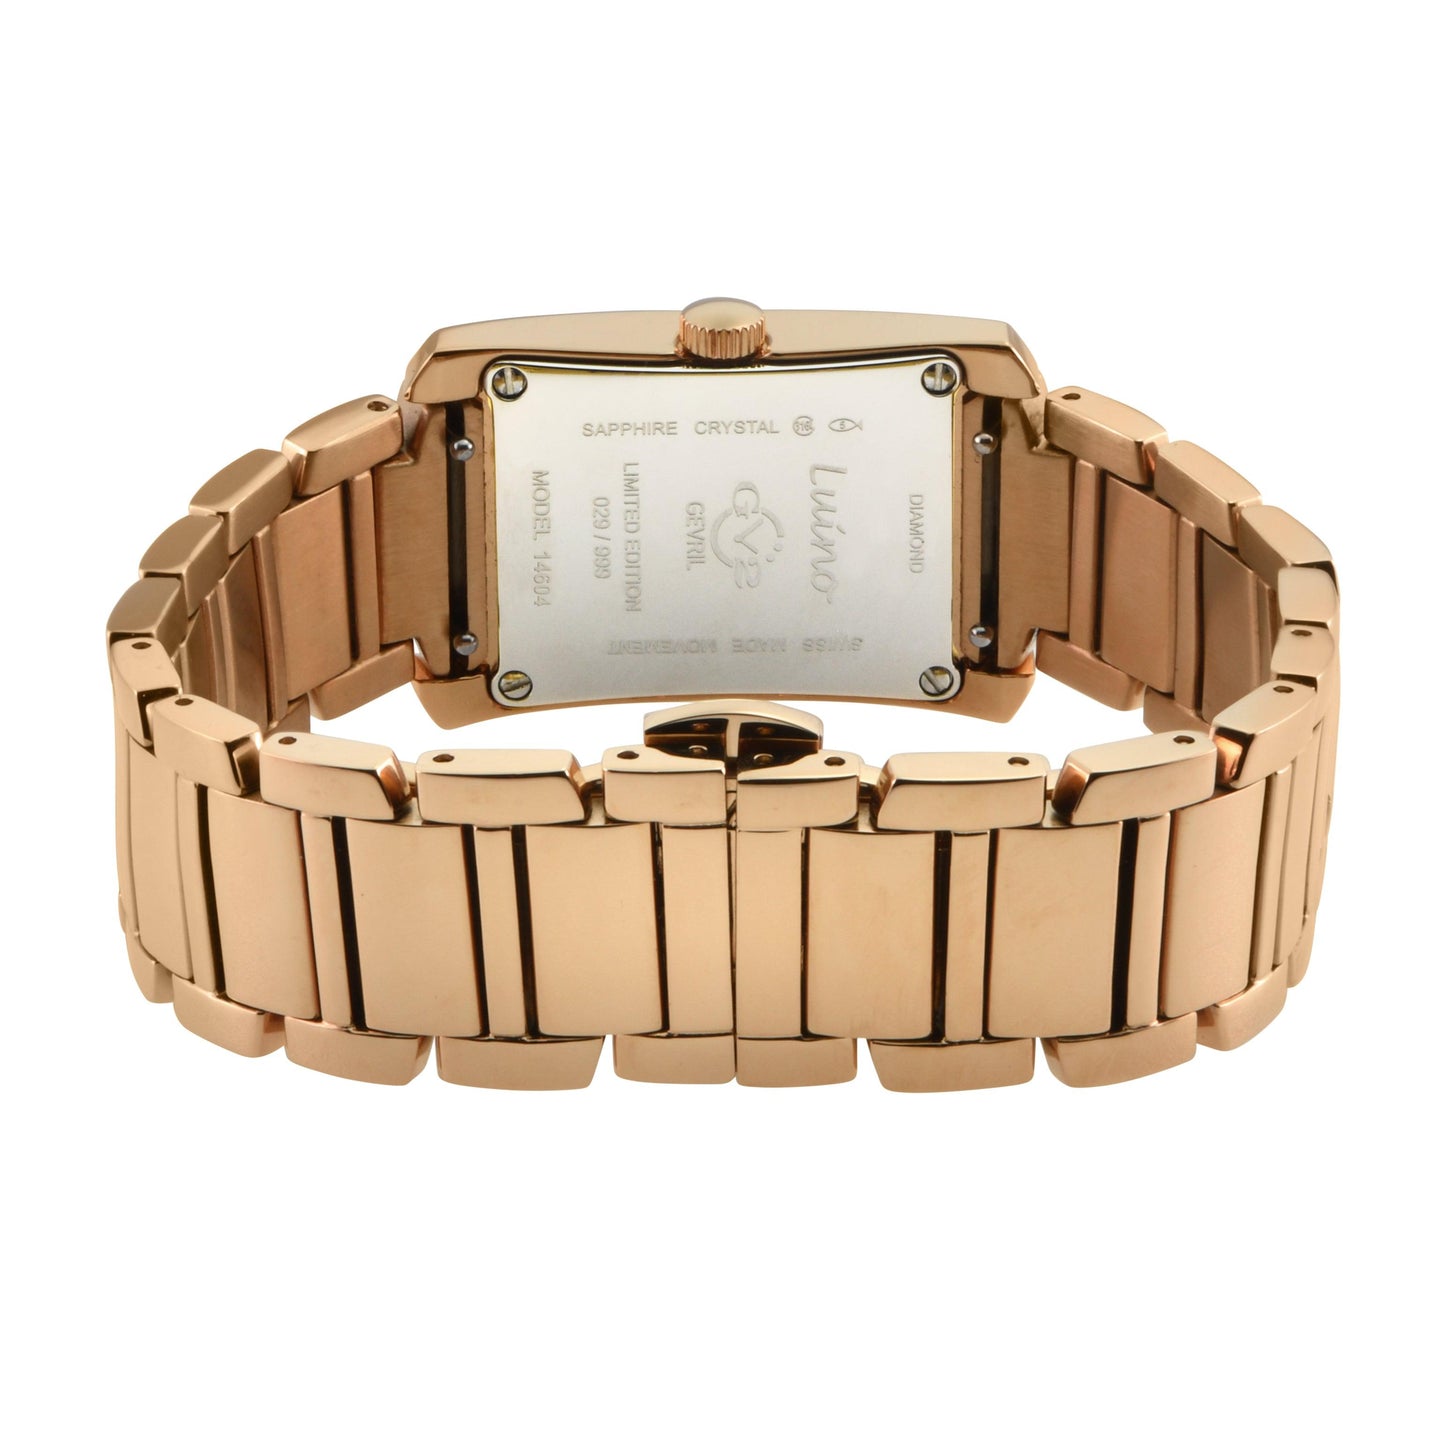 Gevril-Luxury-Swiss-Watches-GV2 Luino-14604B